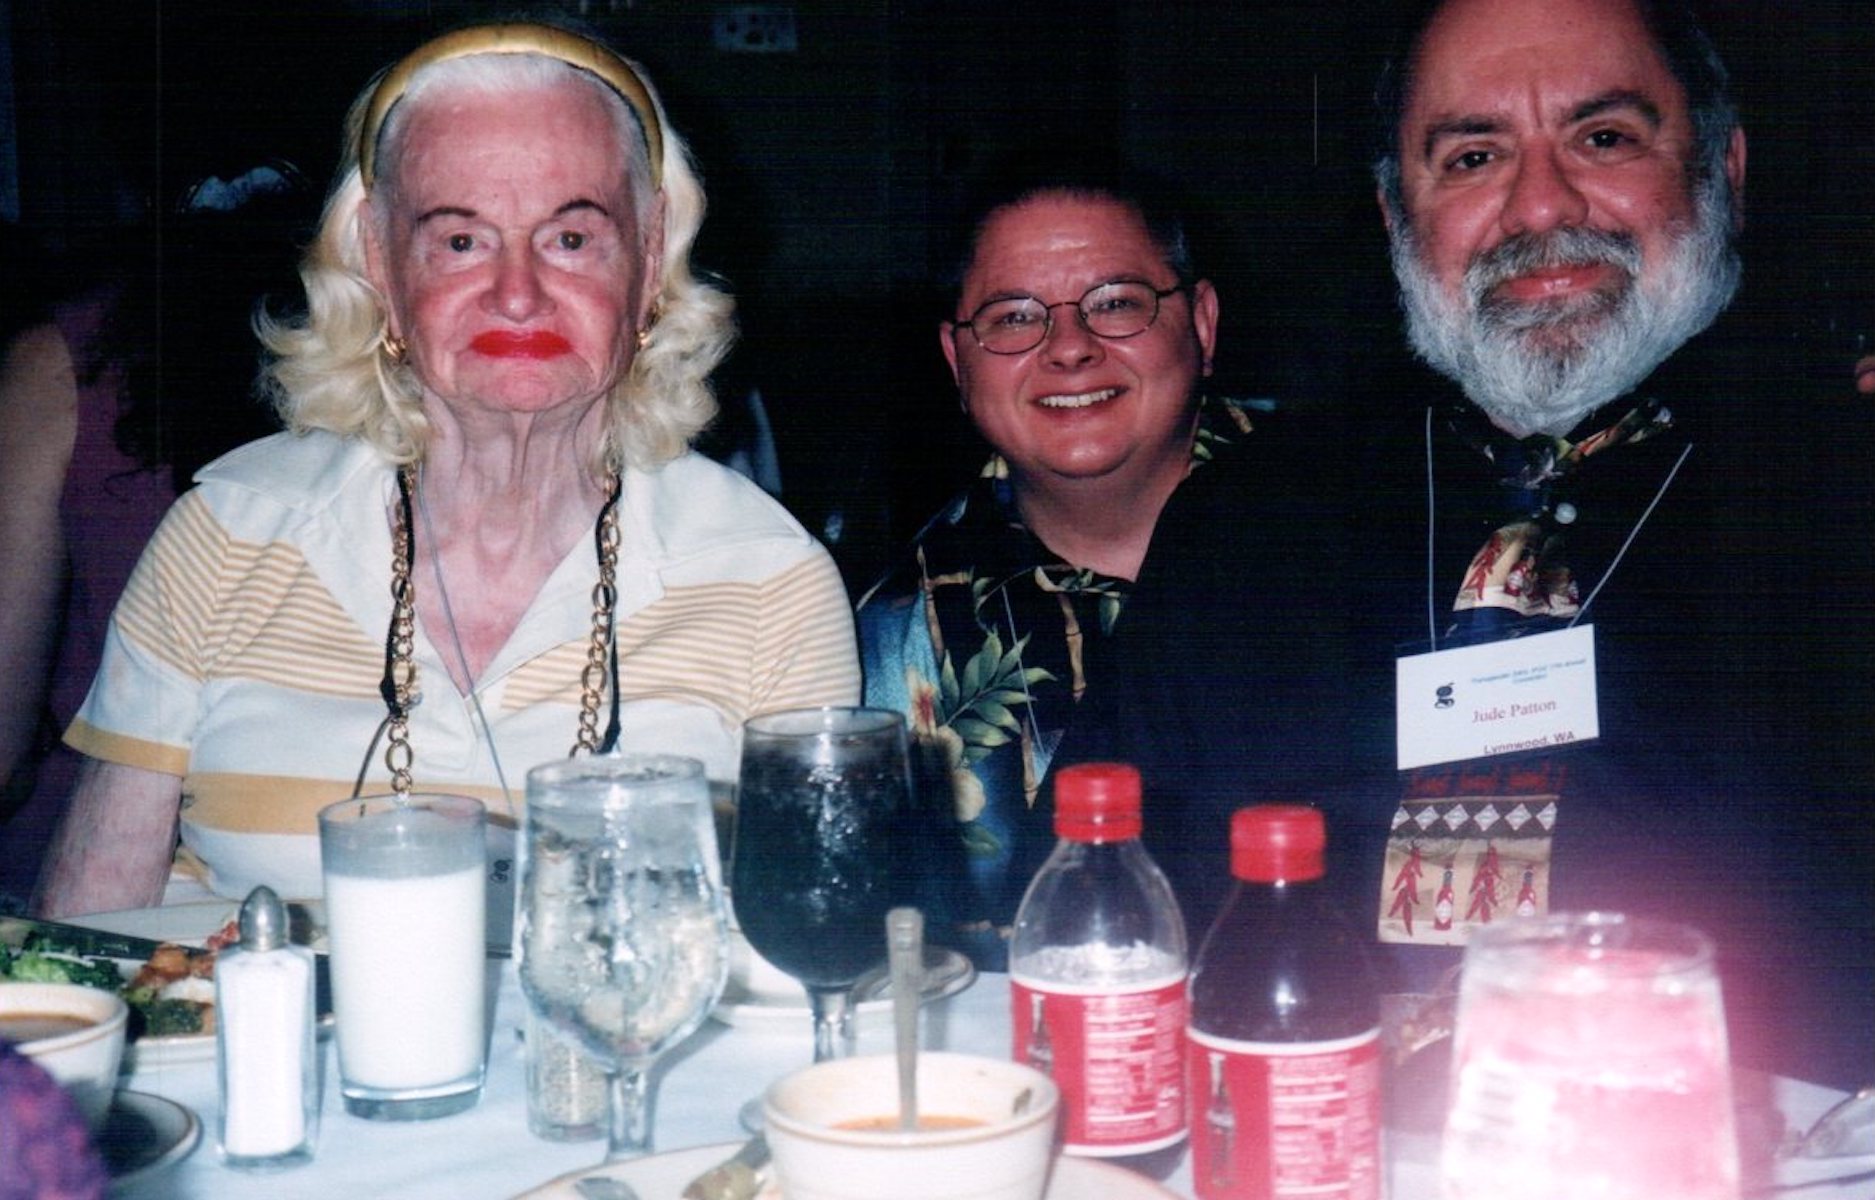 L-R: Virginia Prince, Jude Patton, and Hawk Stone, 2001. Photo courtesy of Jude Patton.